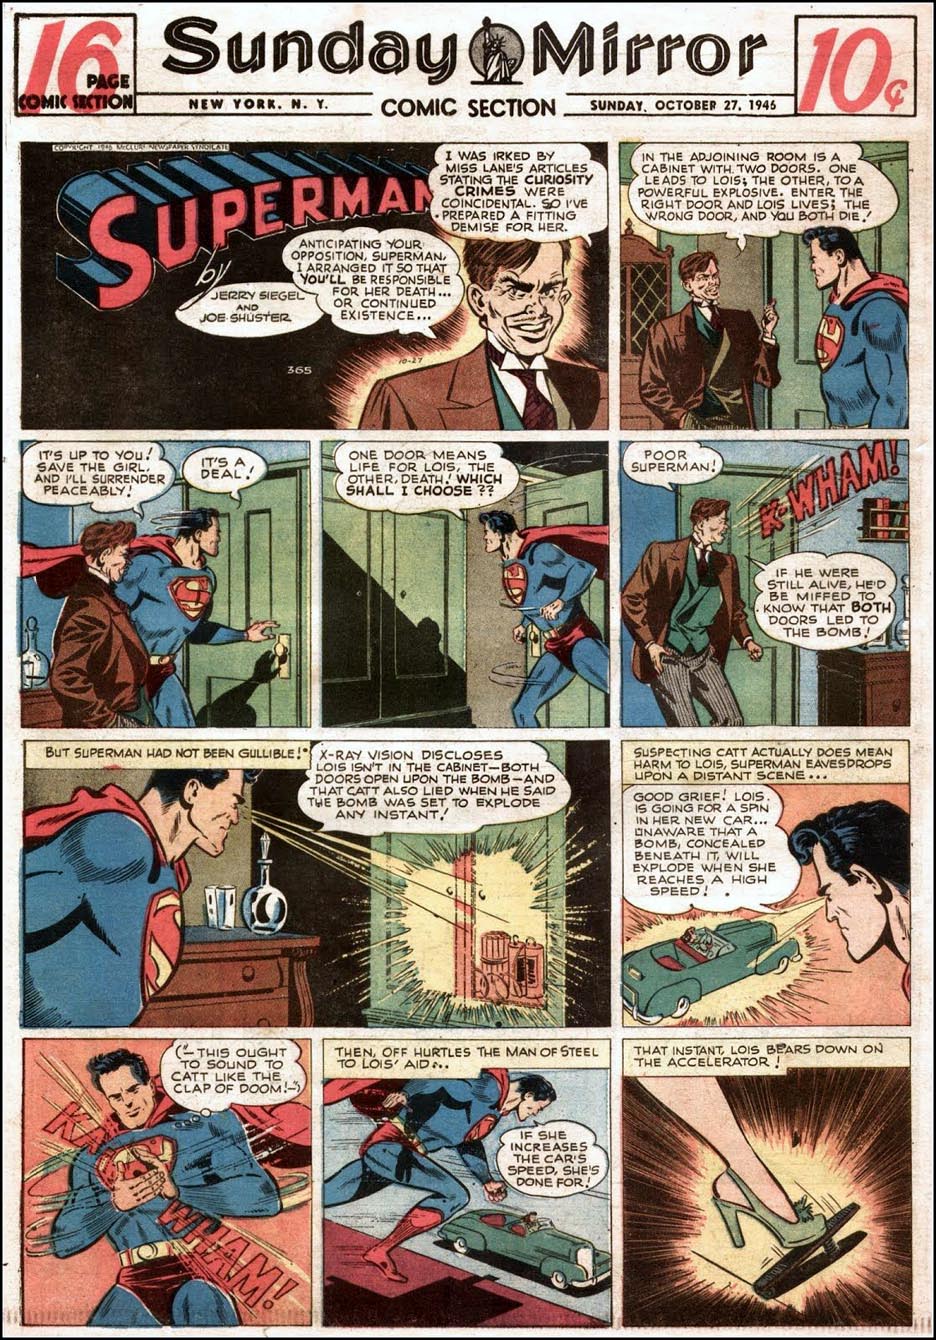 Superman: The Golden Age Newspaper by Schwartz, Alvin